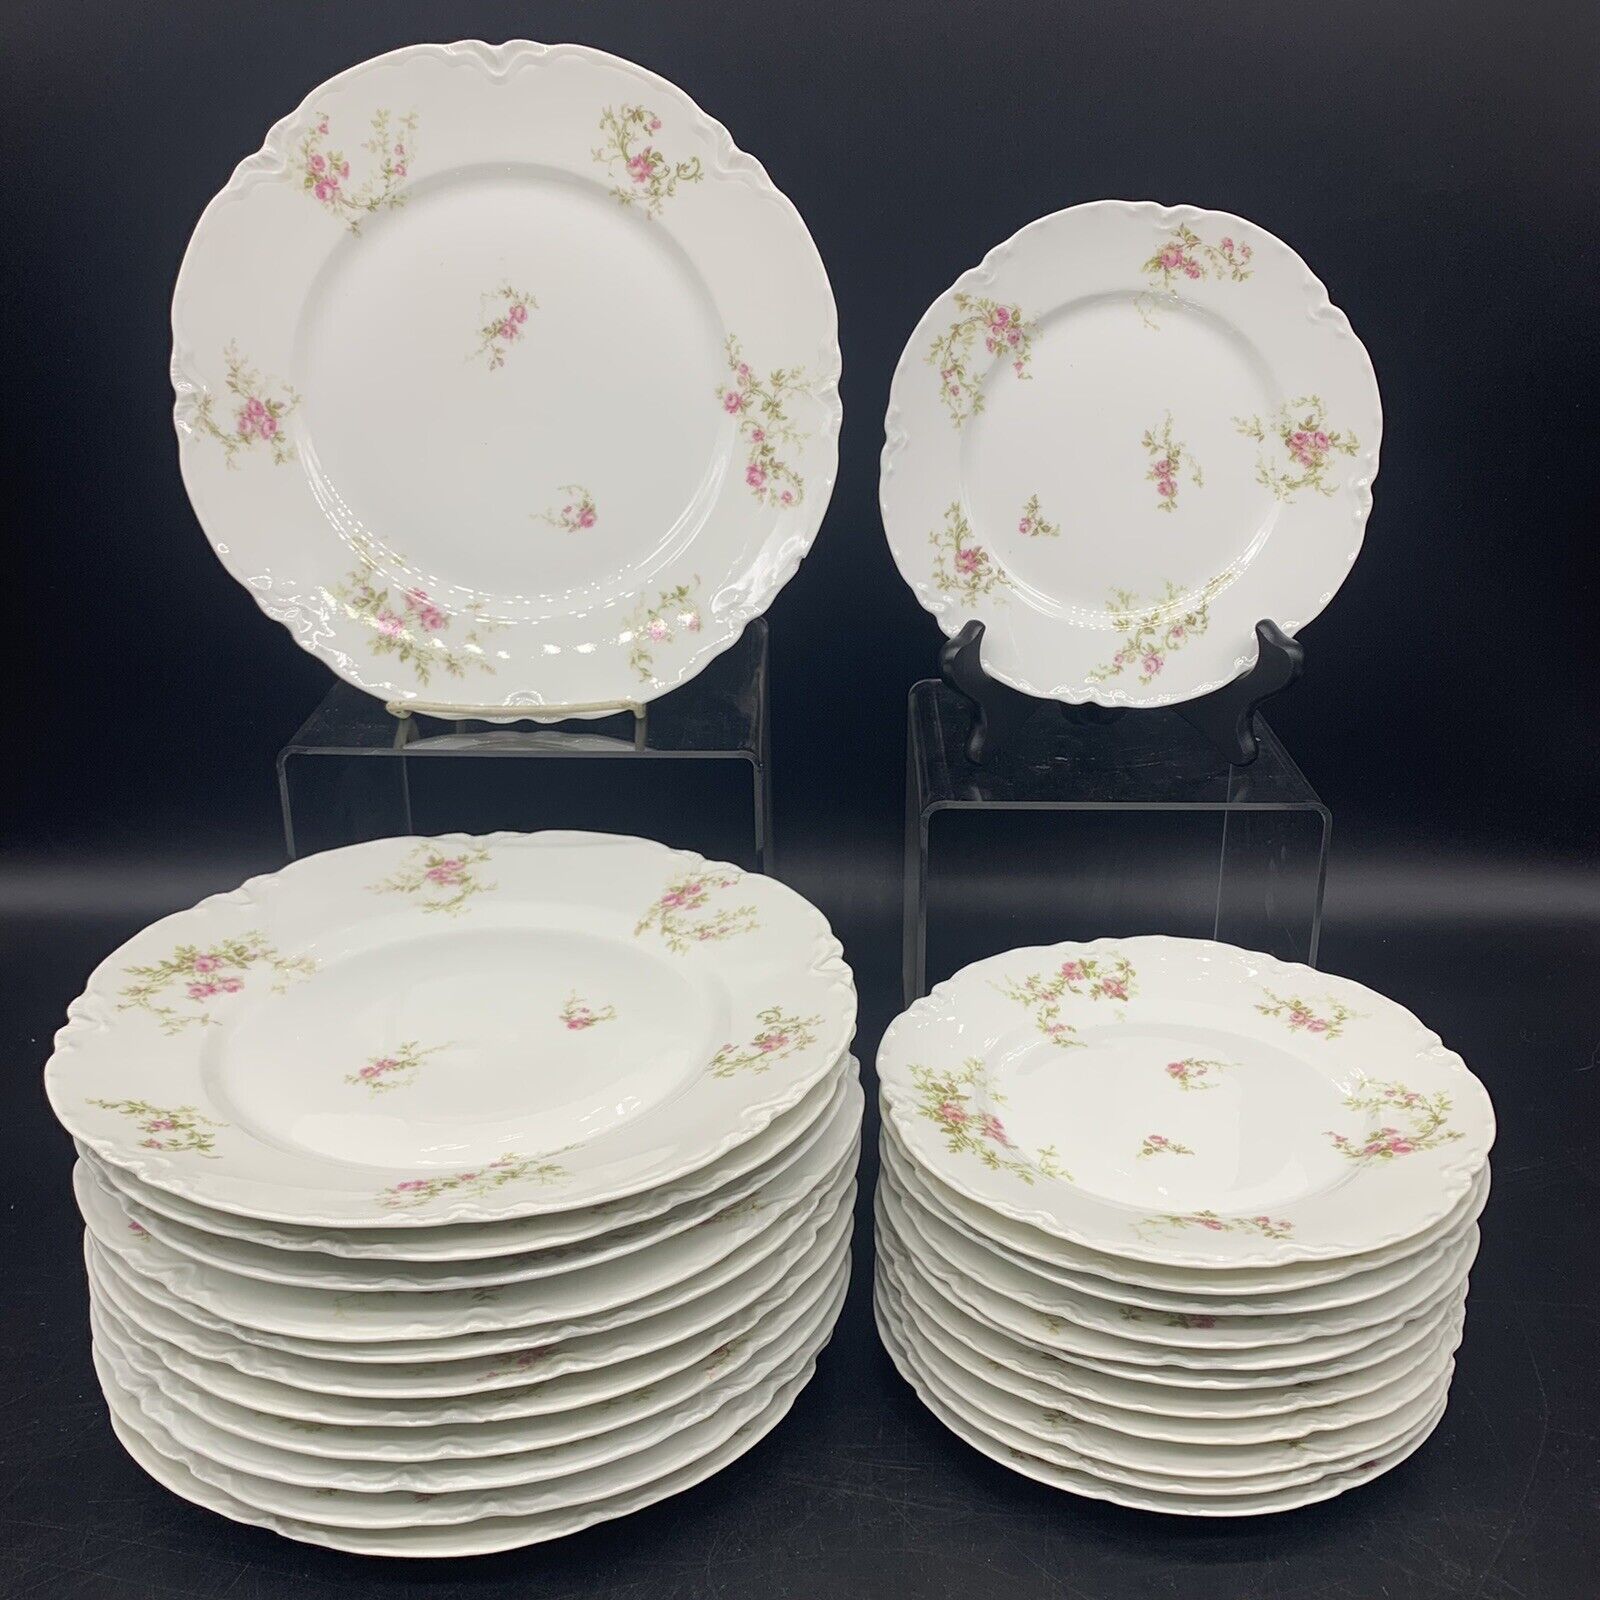 24 pc. ATQ 1900s Haviland Limoges Porcelain Salad & Dinner Plates - Schleiger 36